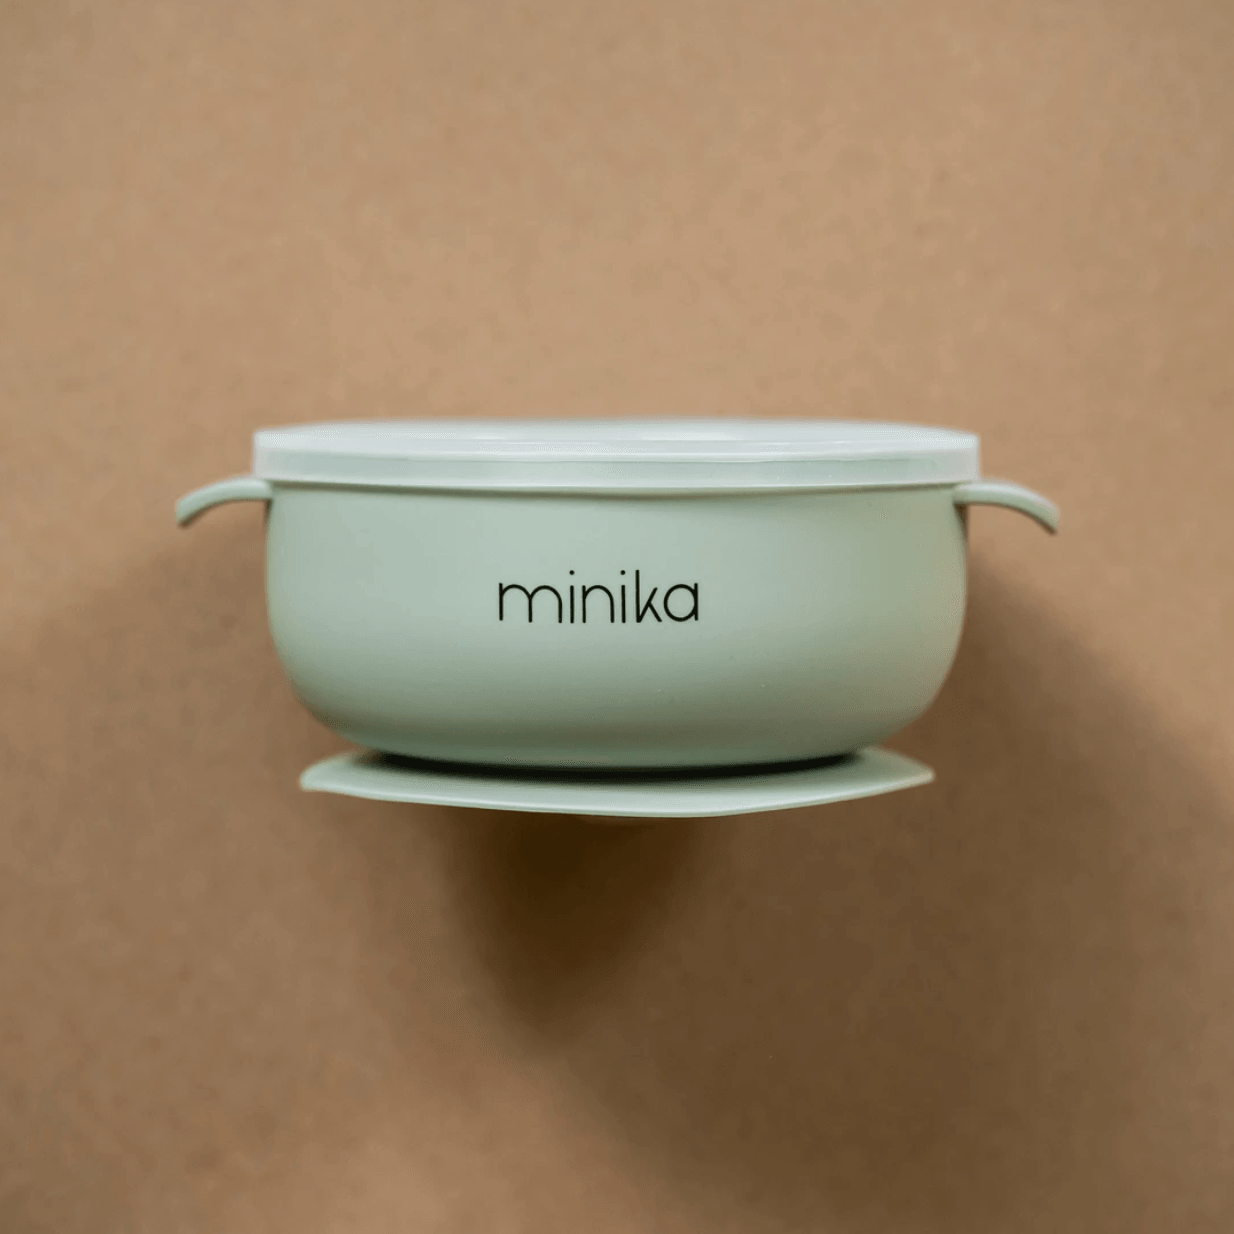 minika sage colour silicone bowl